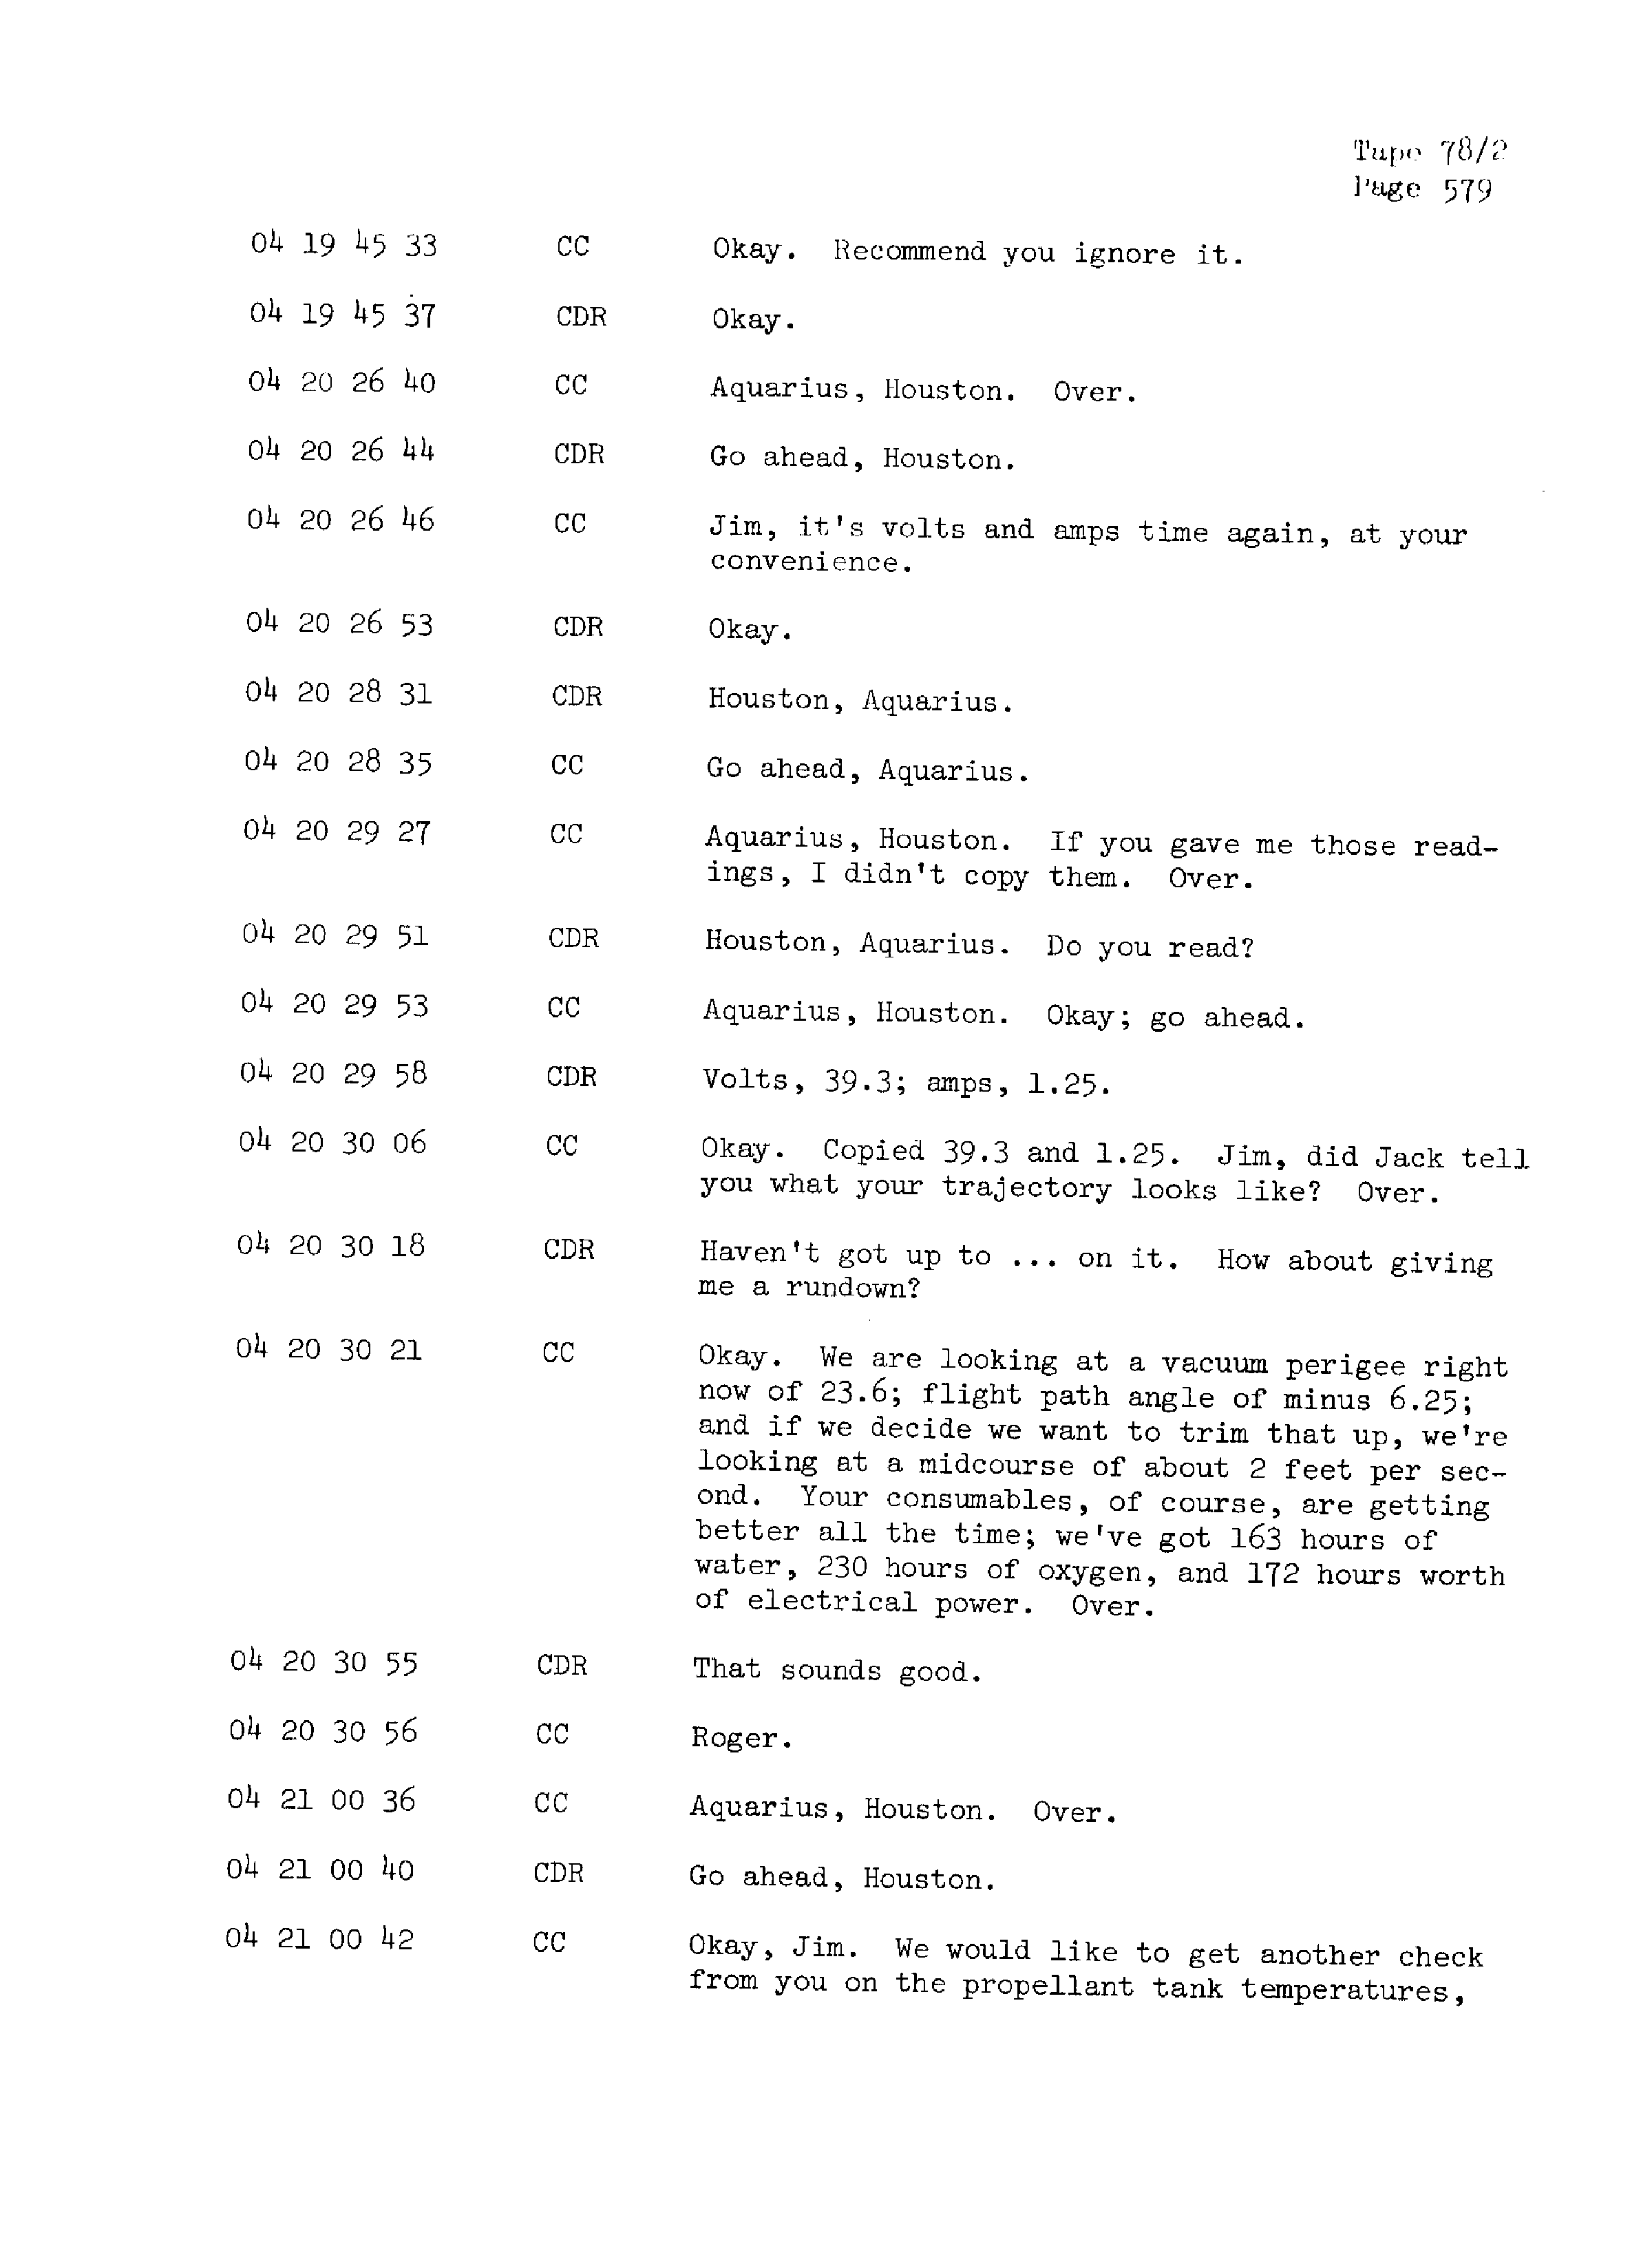 Page 586 of Apollo 13’s original transcript